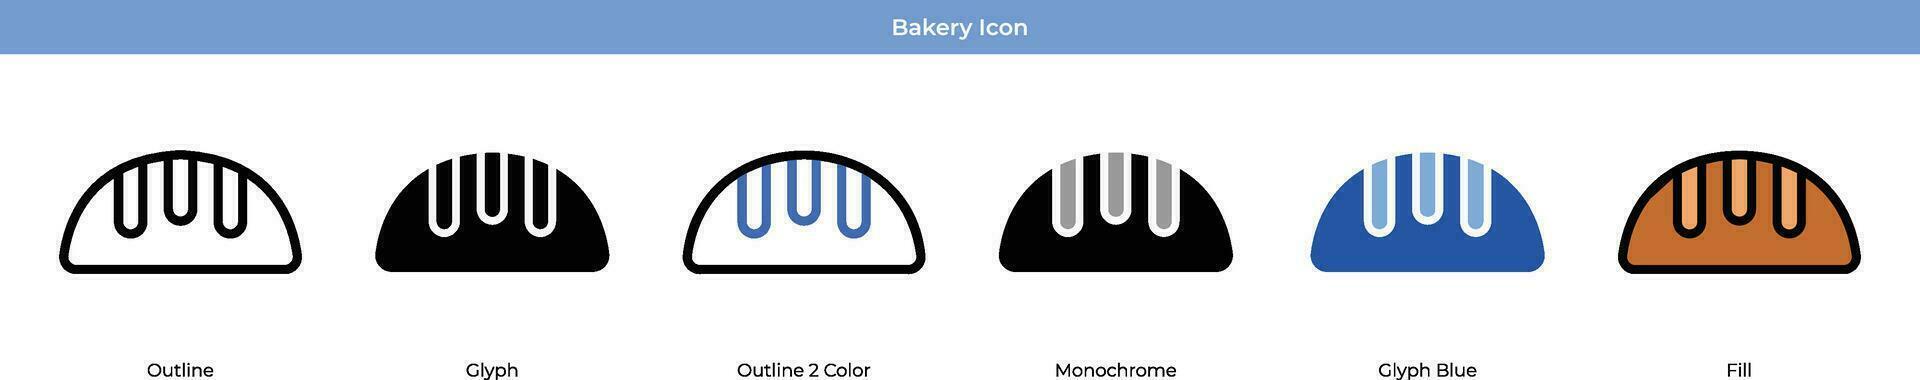 conjunto de iconos de panadería vector